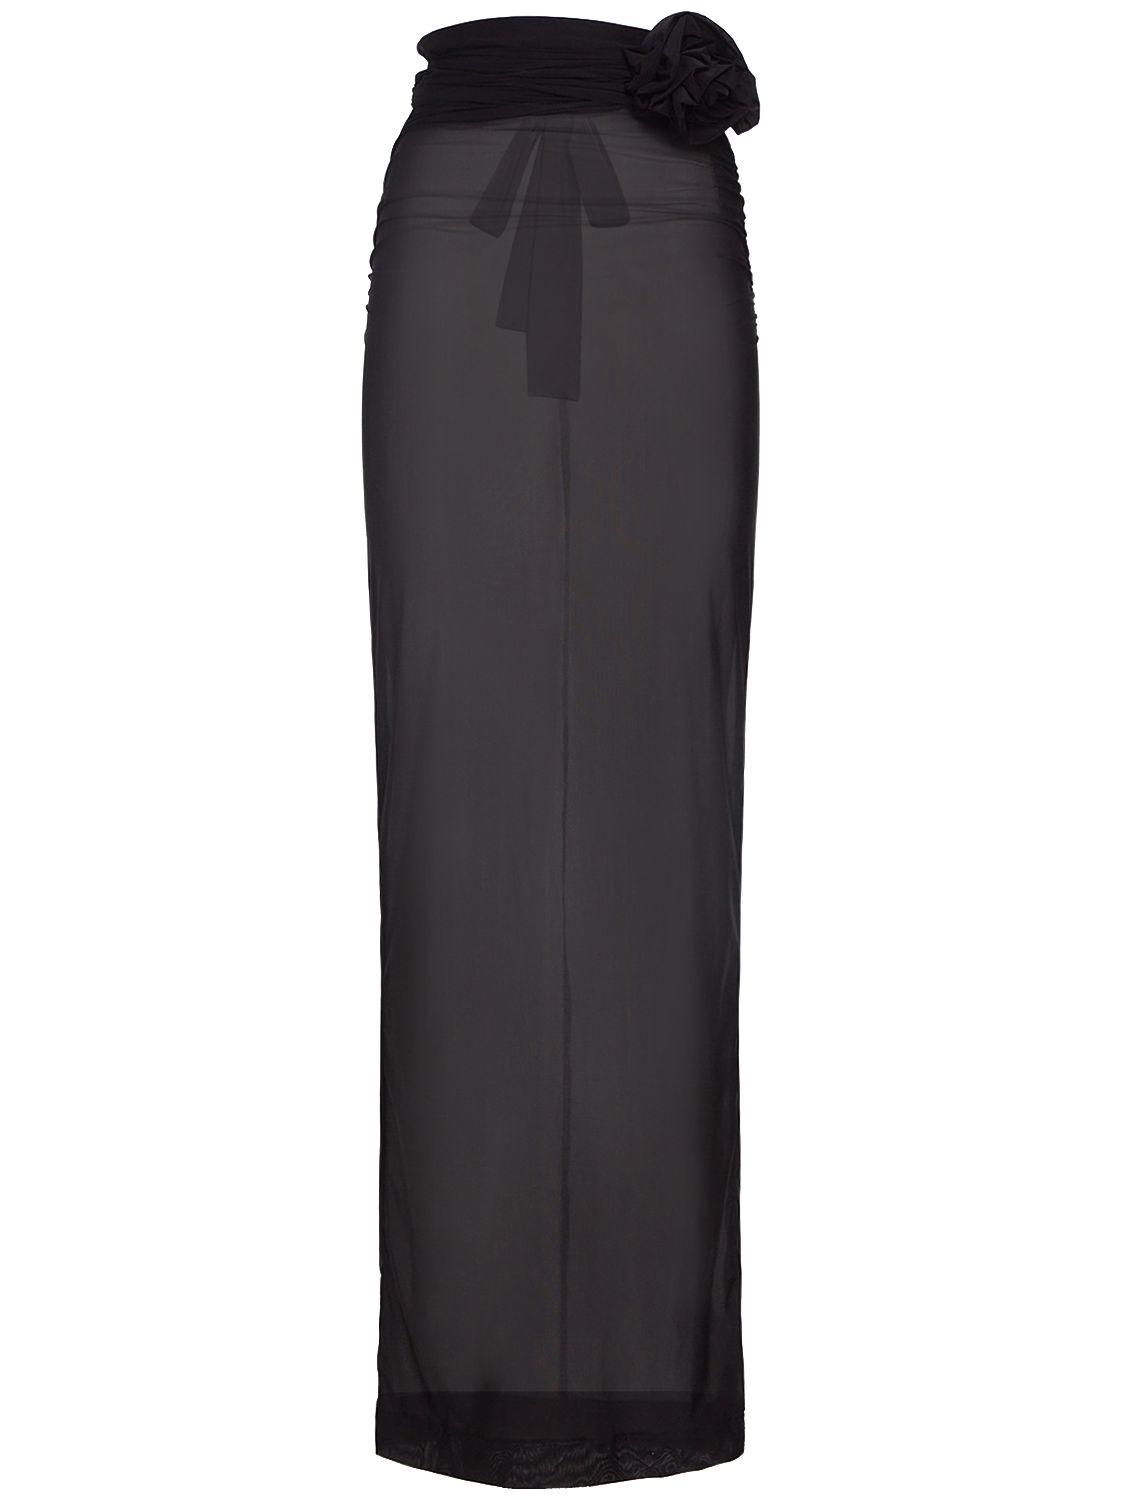 Draped Tulle Jersey Long Skirt W/ Flower